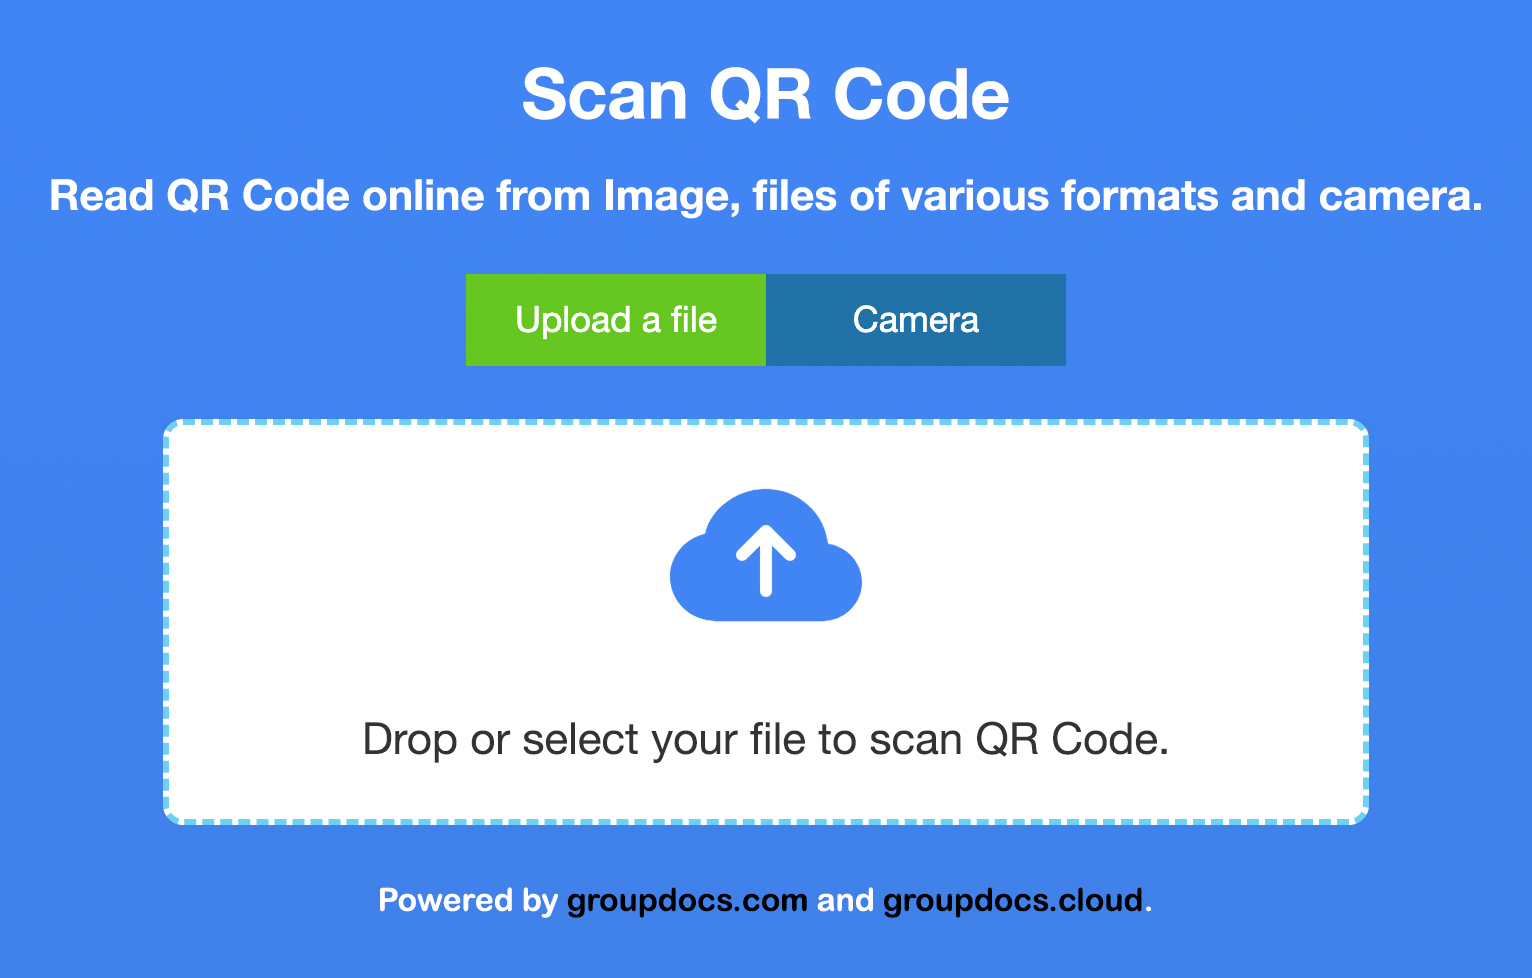 Scan QR Code Image Online